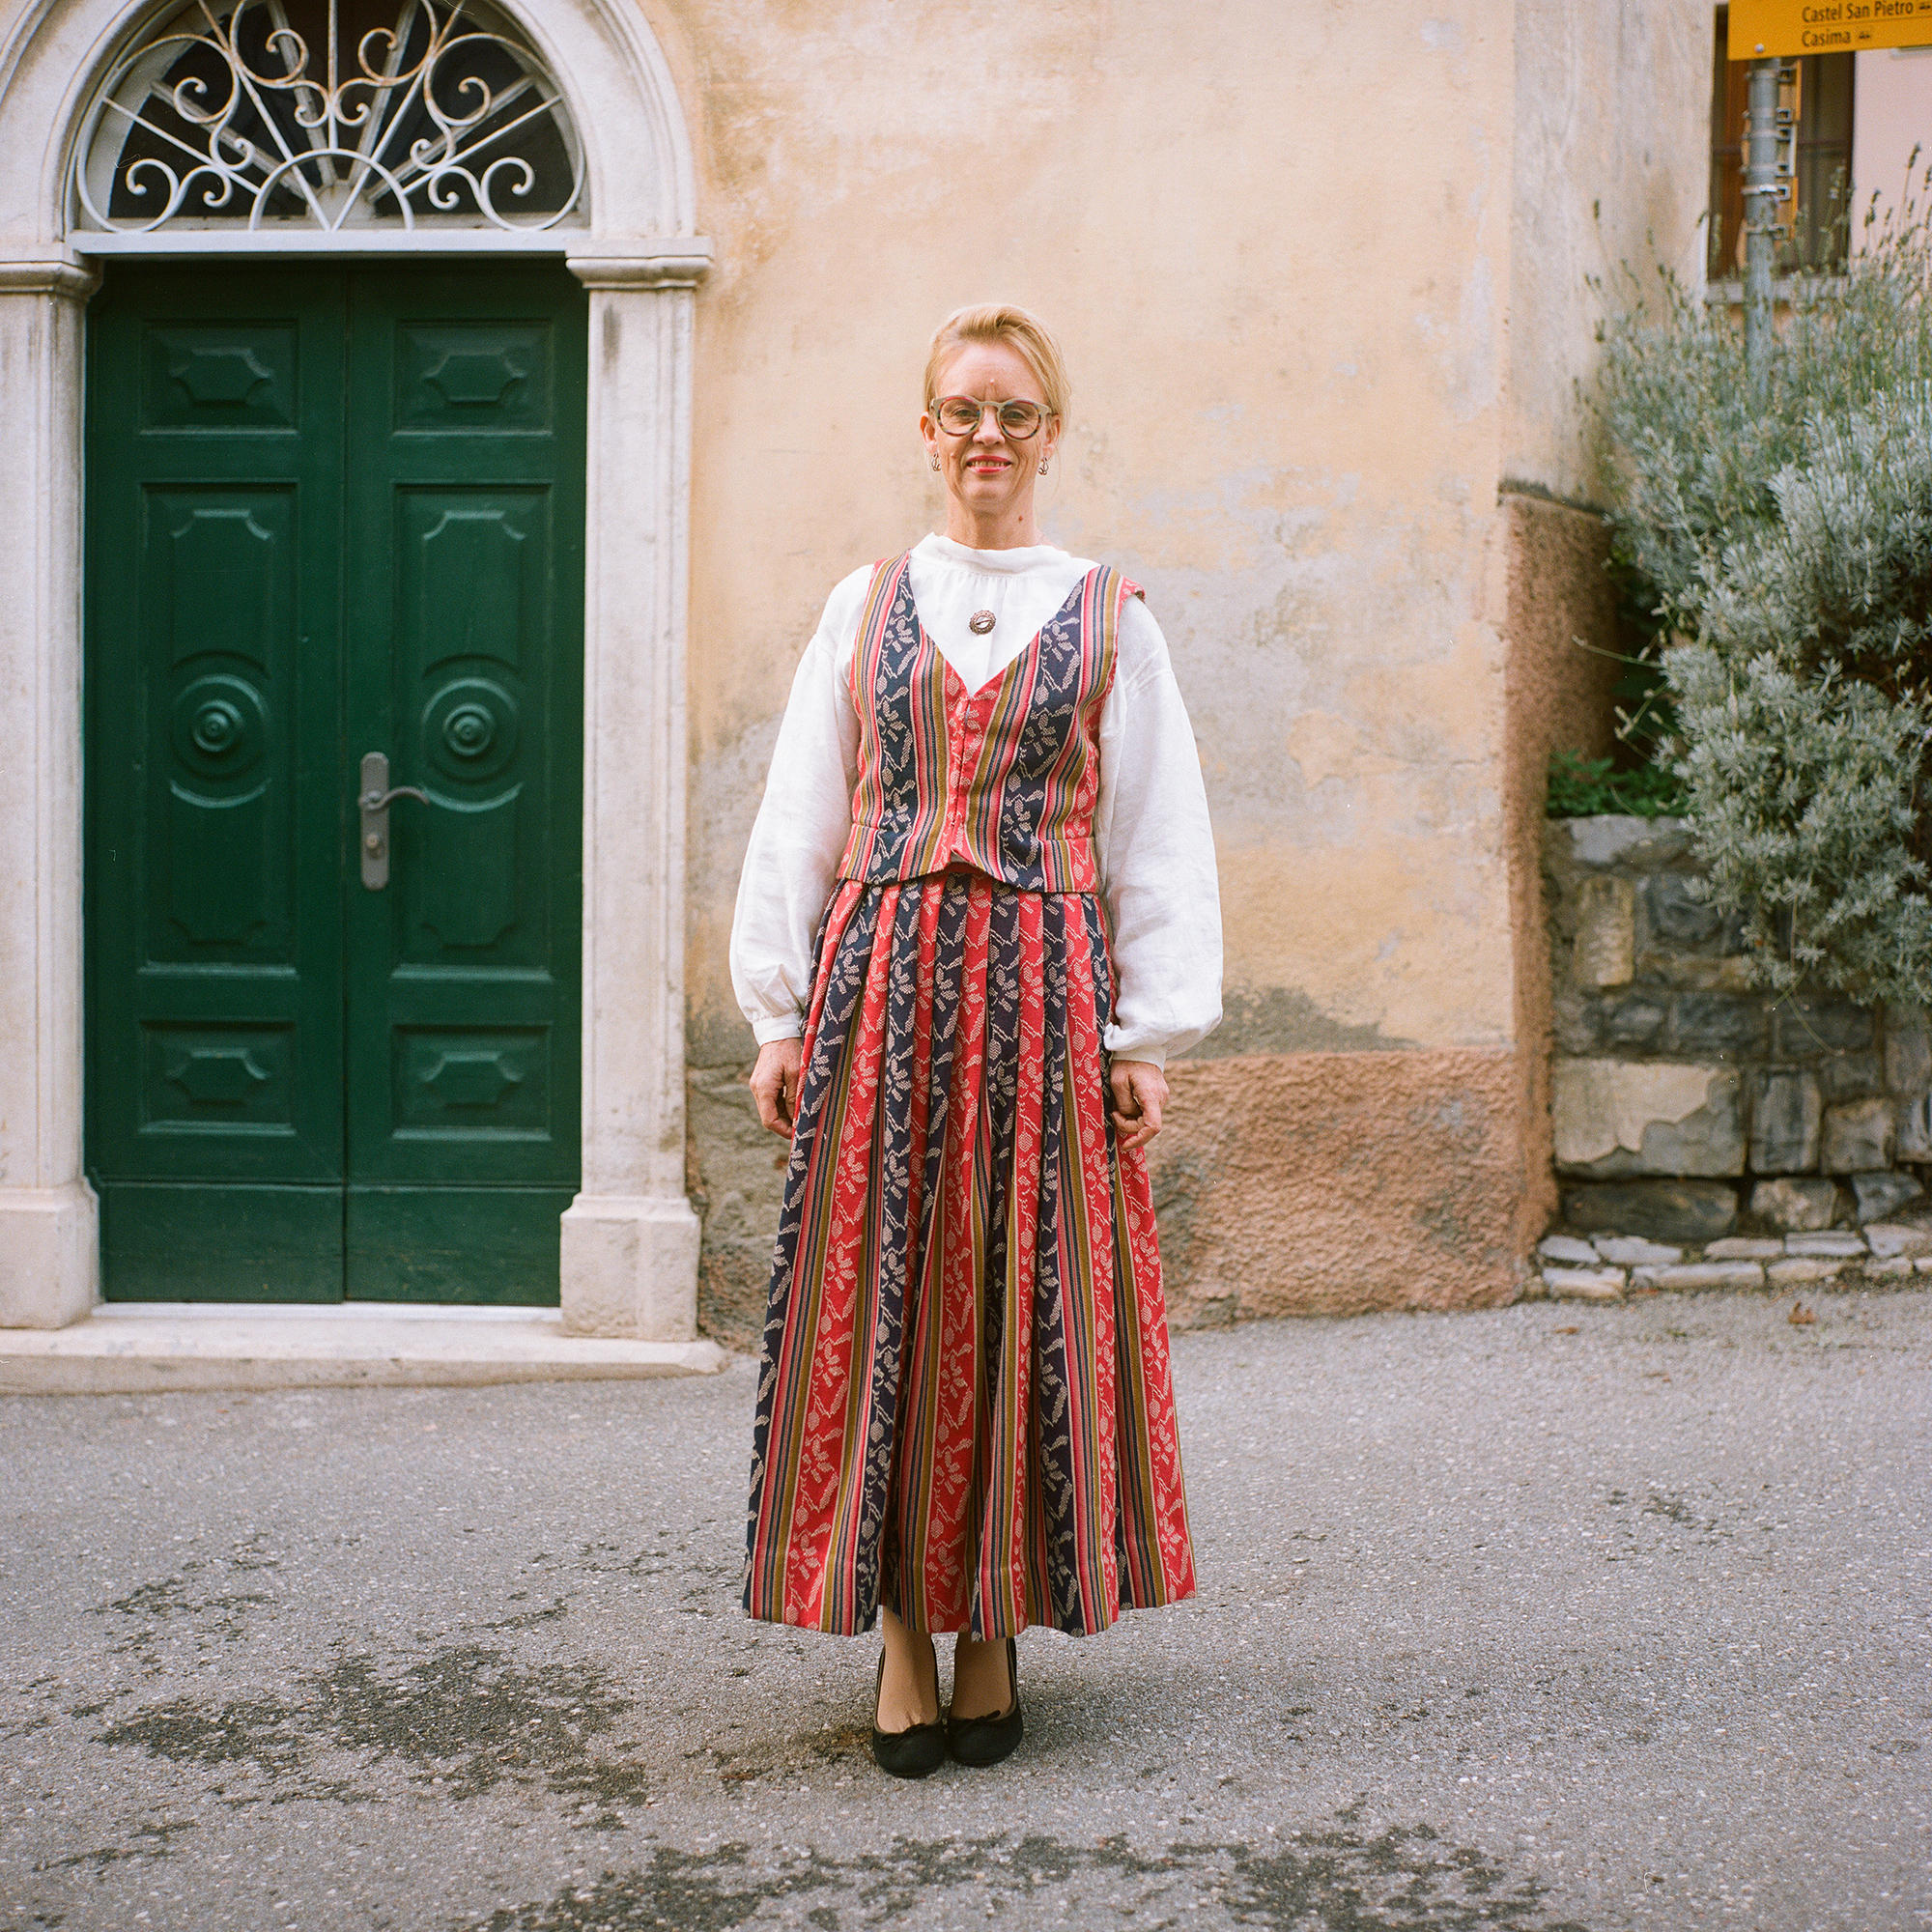 Mujer con vestimenta típica de Finlandia. Falda larga y chaleco con franjas verticales